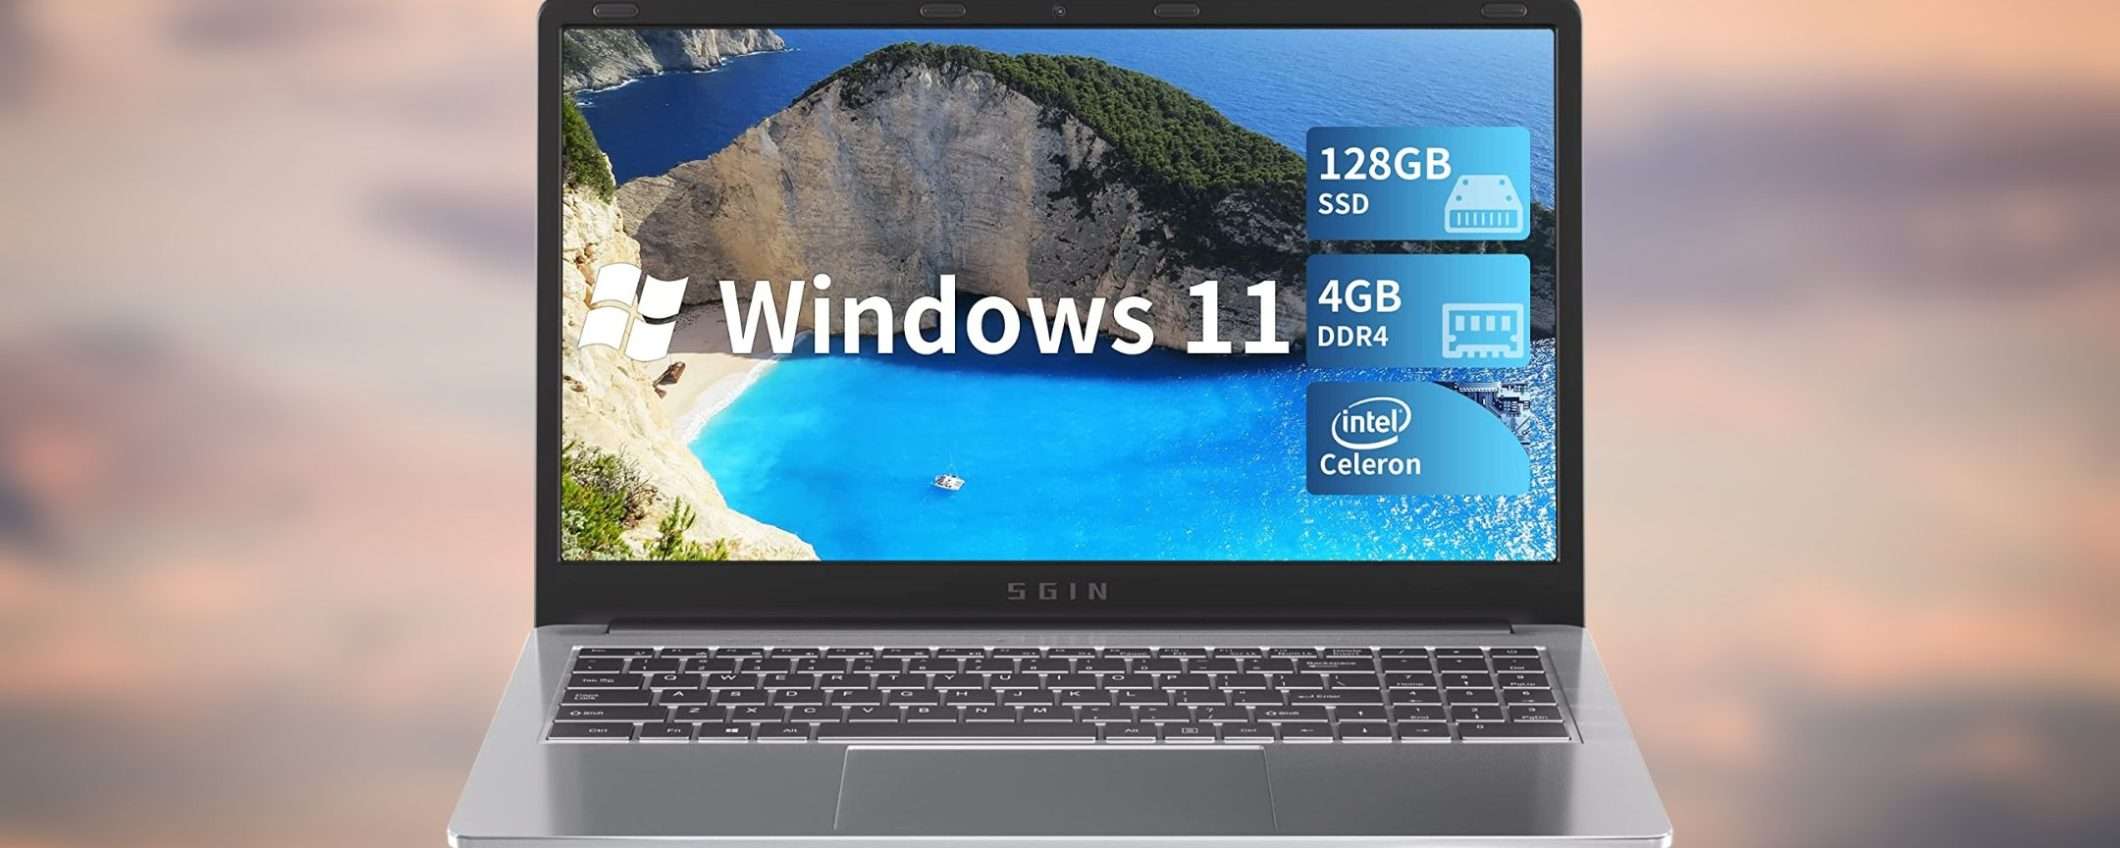 Notebook con Windows 11: economico e velocissimo, solo 219€